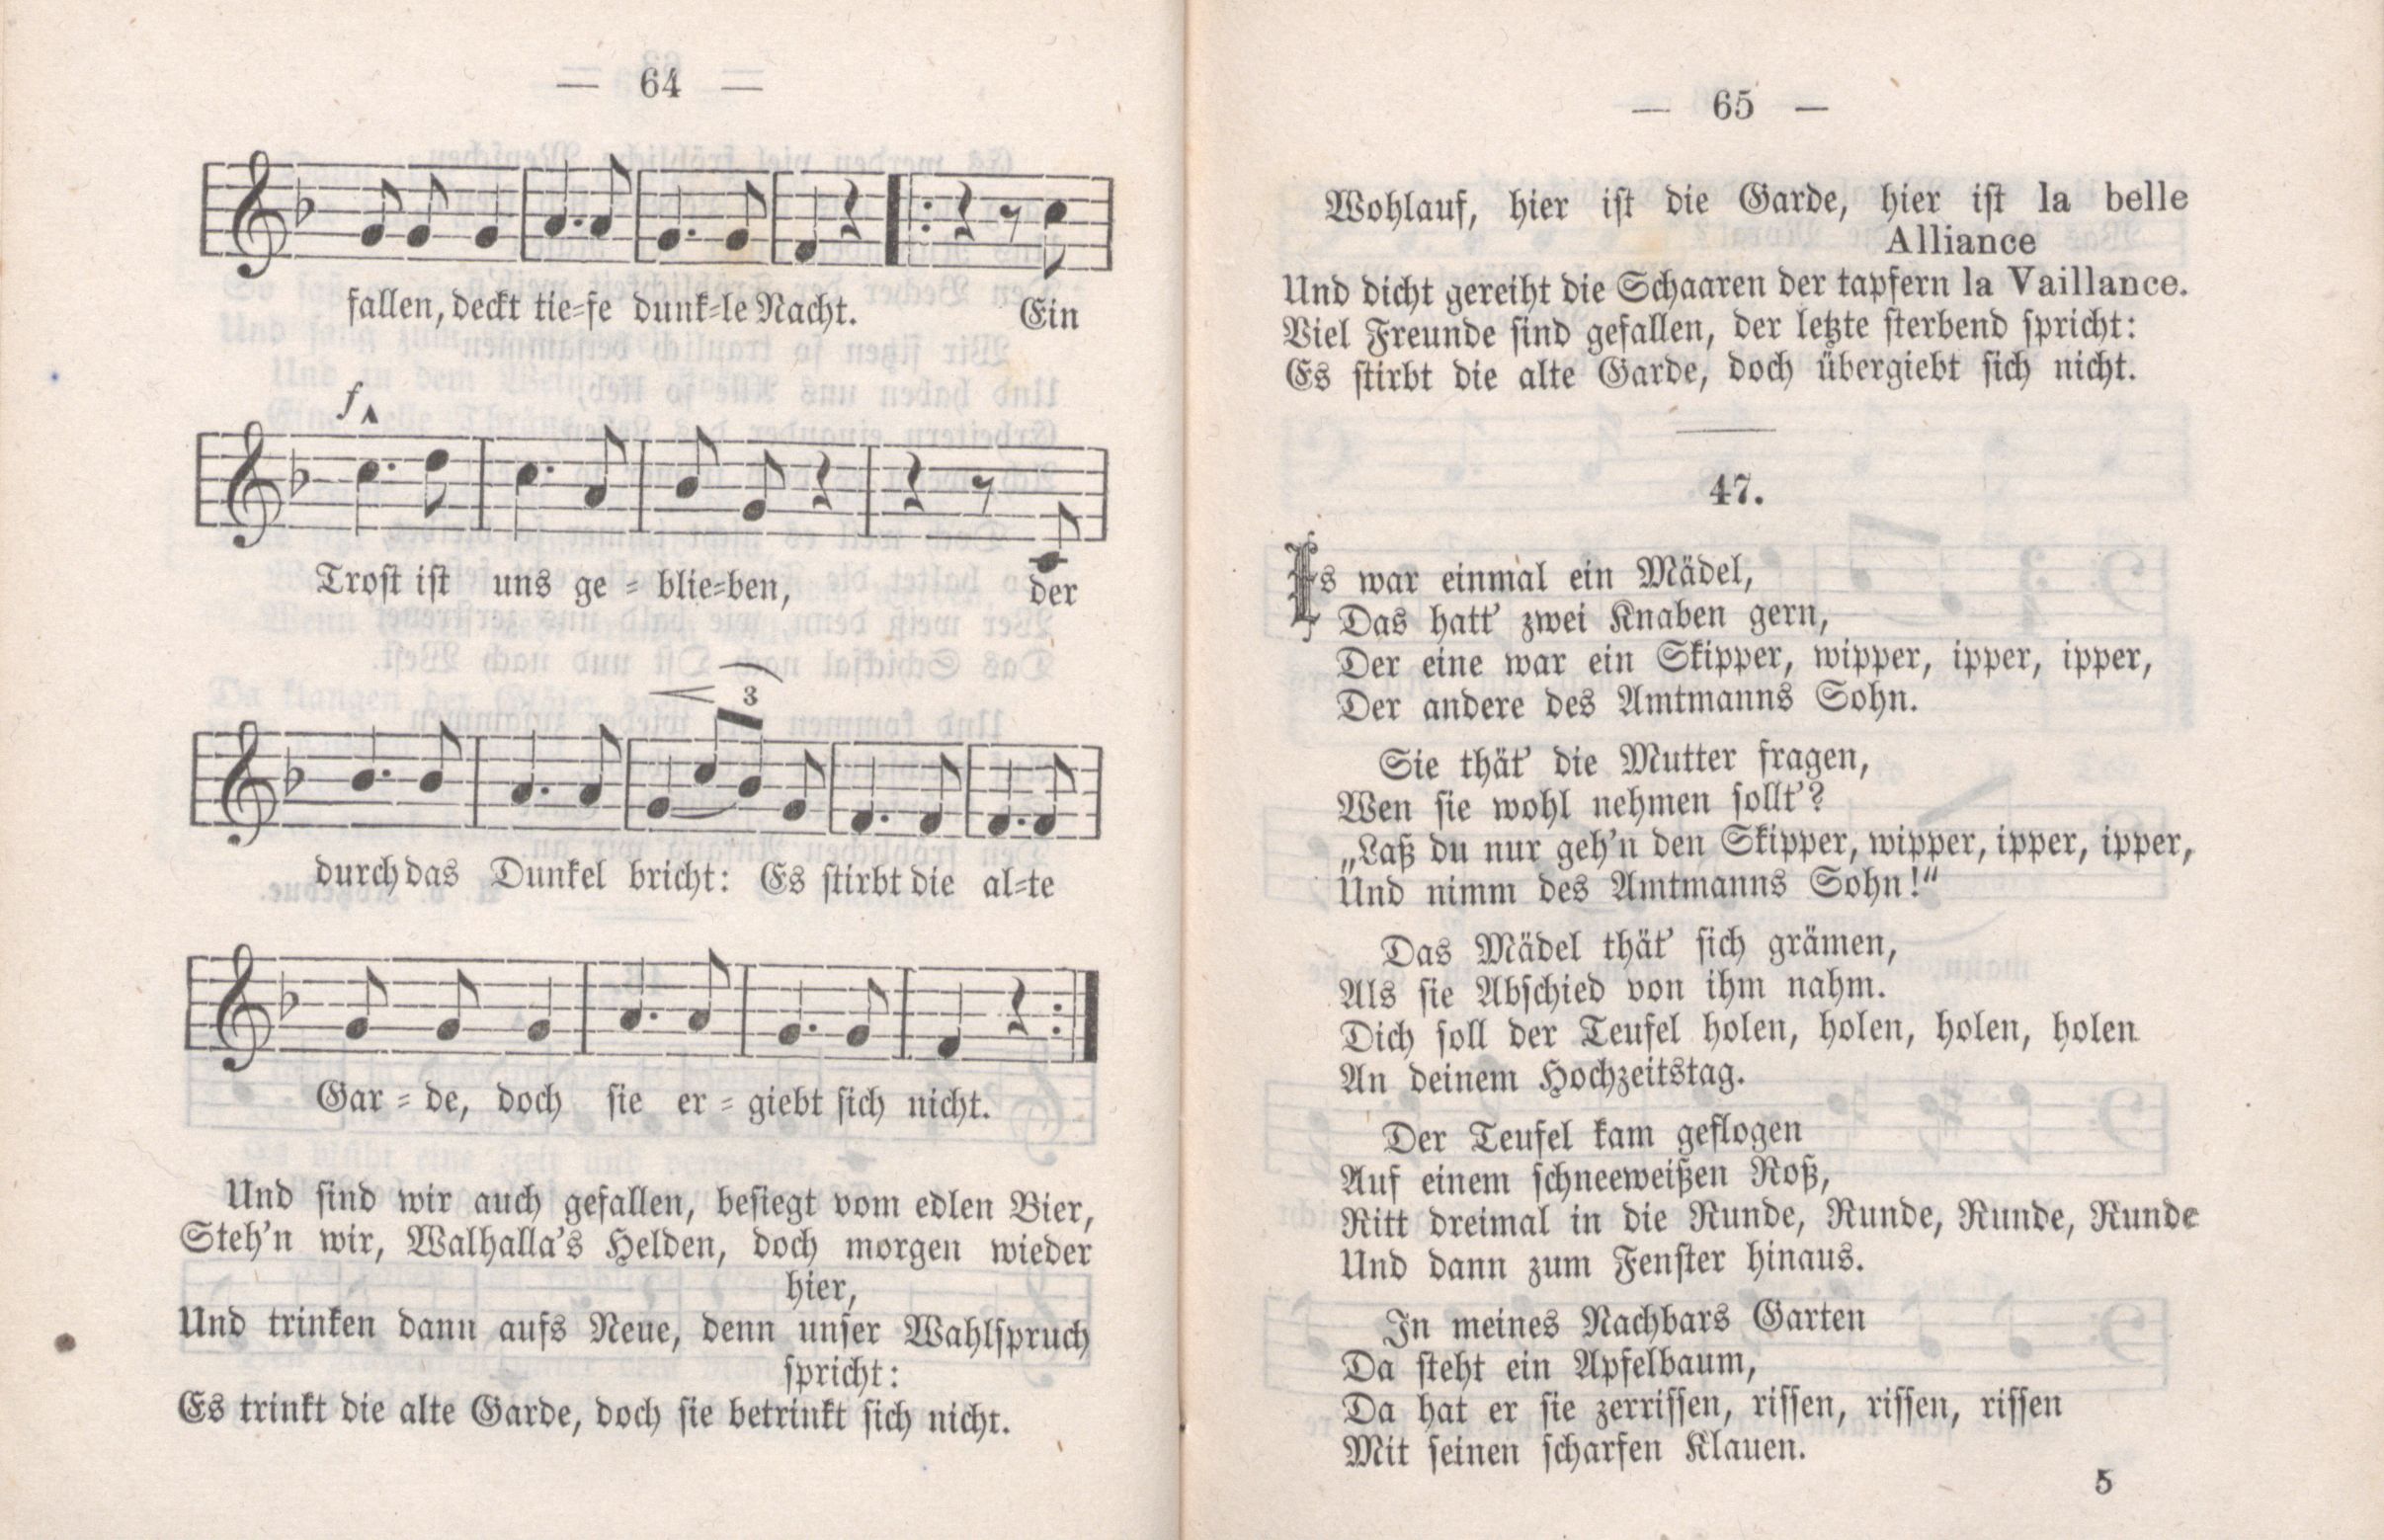 Dorpater Burschenliederbuch (1882) | 38. (64-65) Haupttext